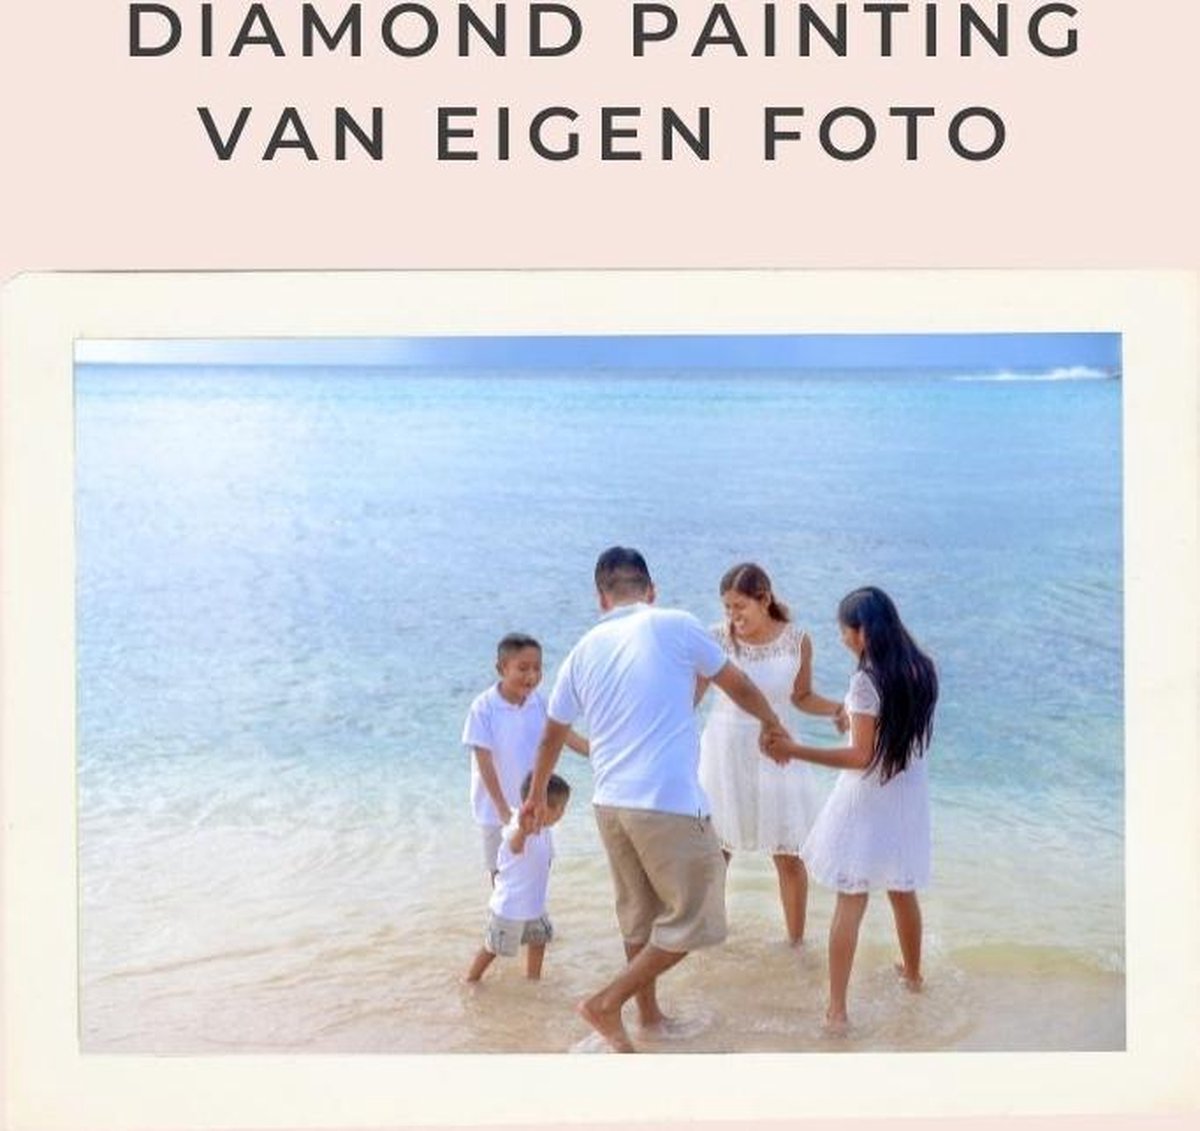 Diamond painting eigen foto - Geproduceerd in Nederland - 40 x 60 cm - dibond materiaal - vierkante steentjes - Binnen 2-3 werkdagen in huis